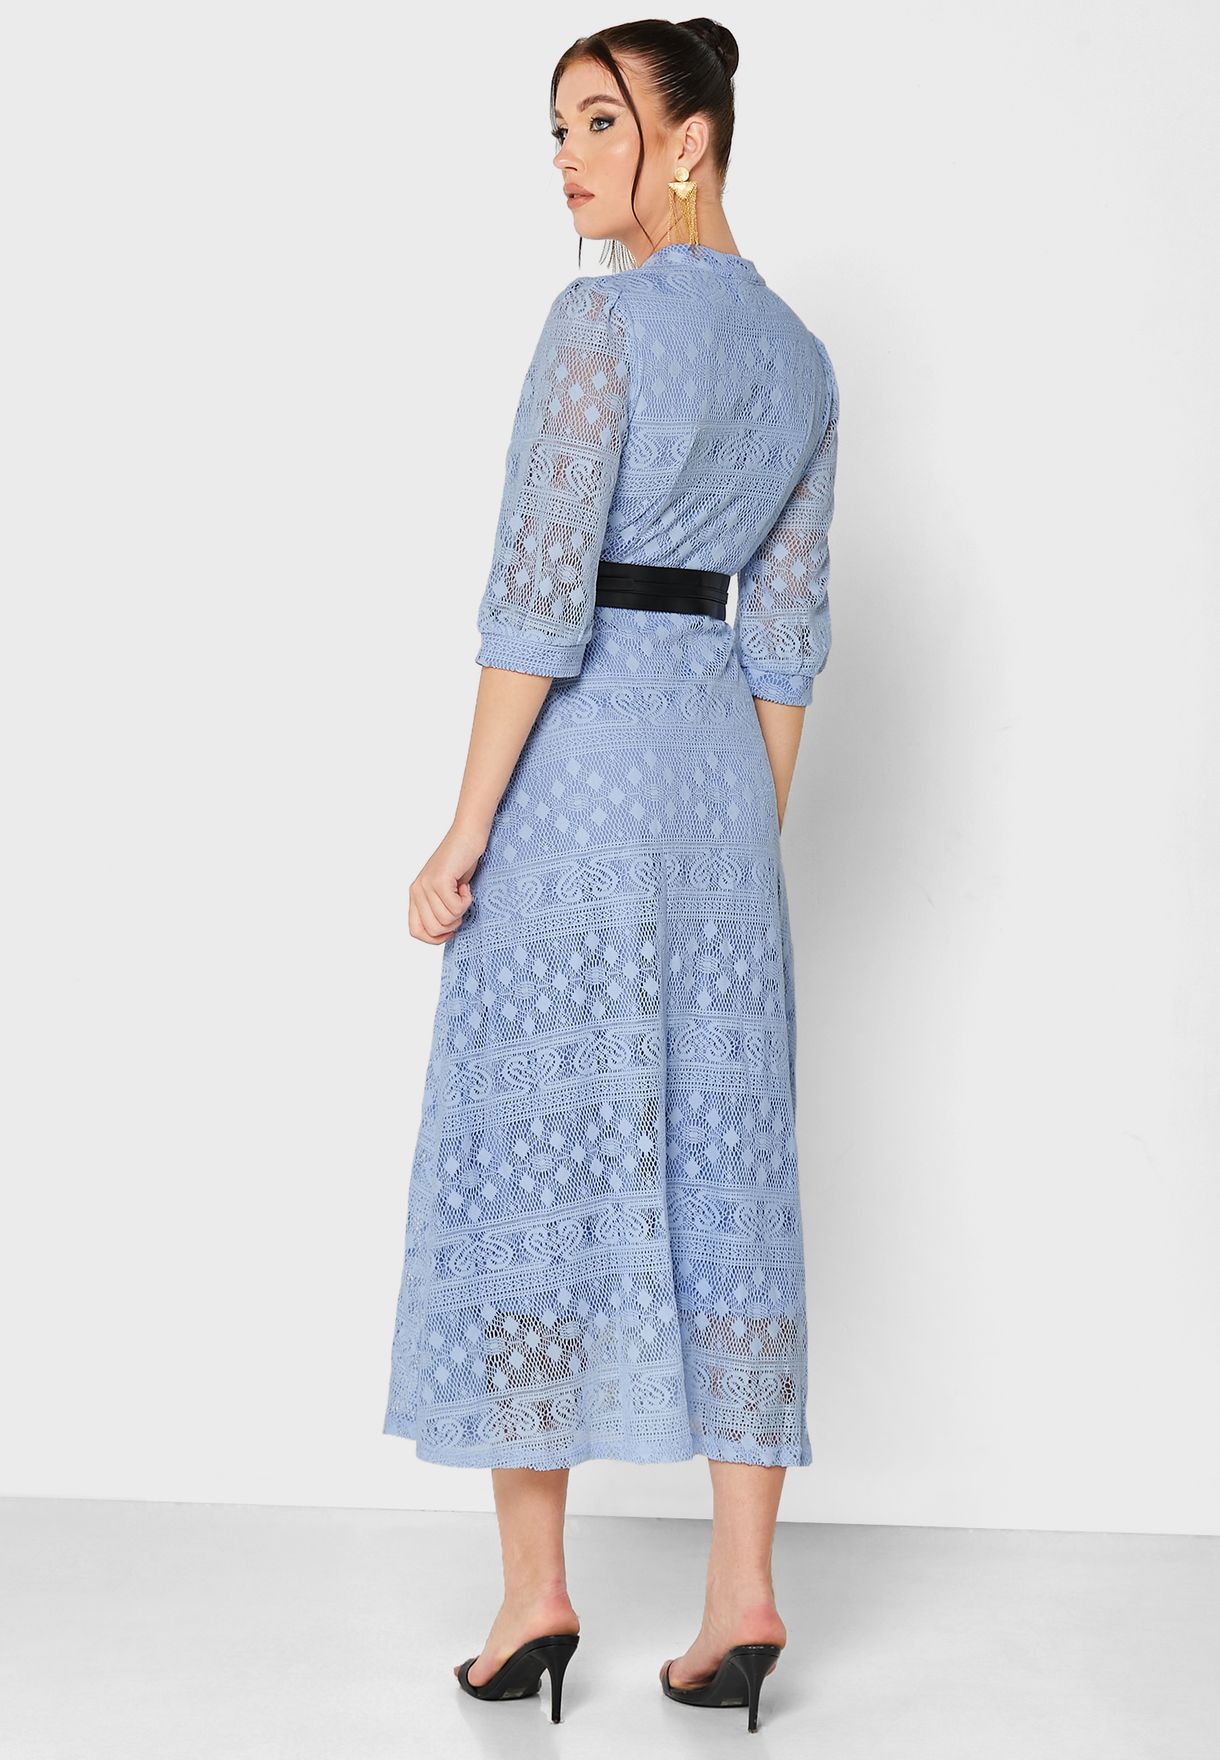 Lace A-Line Dress